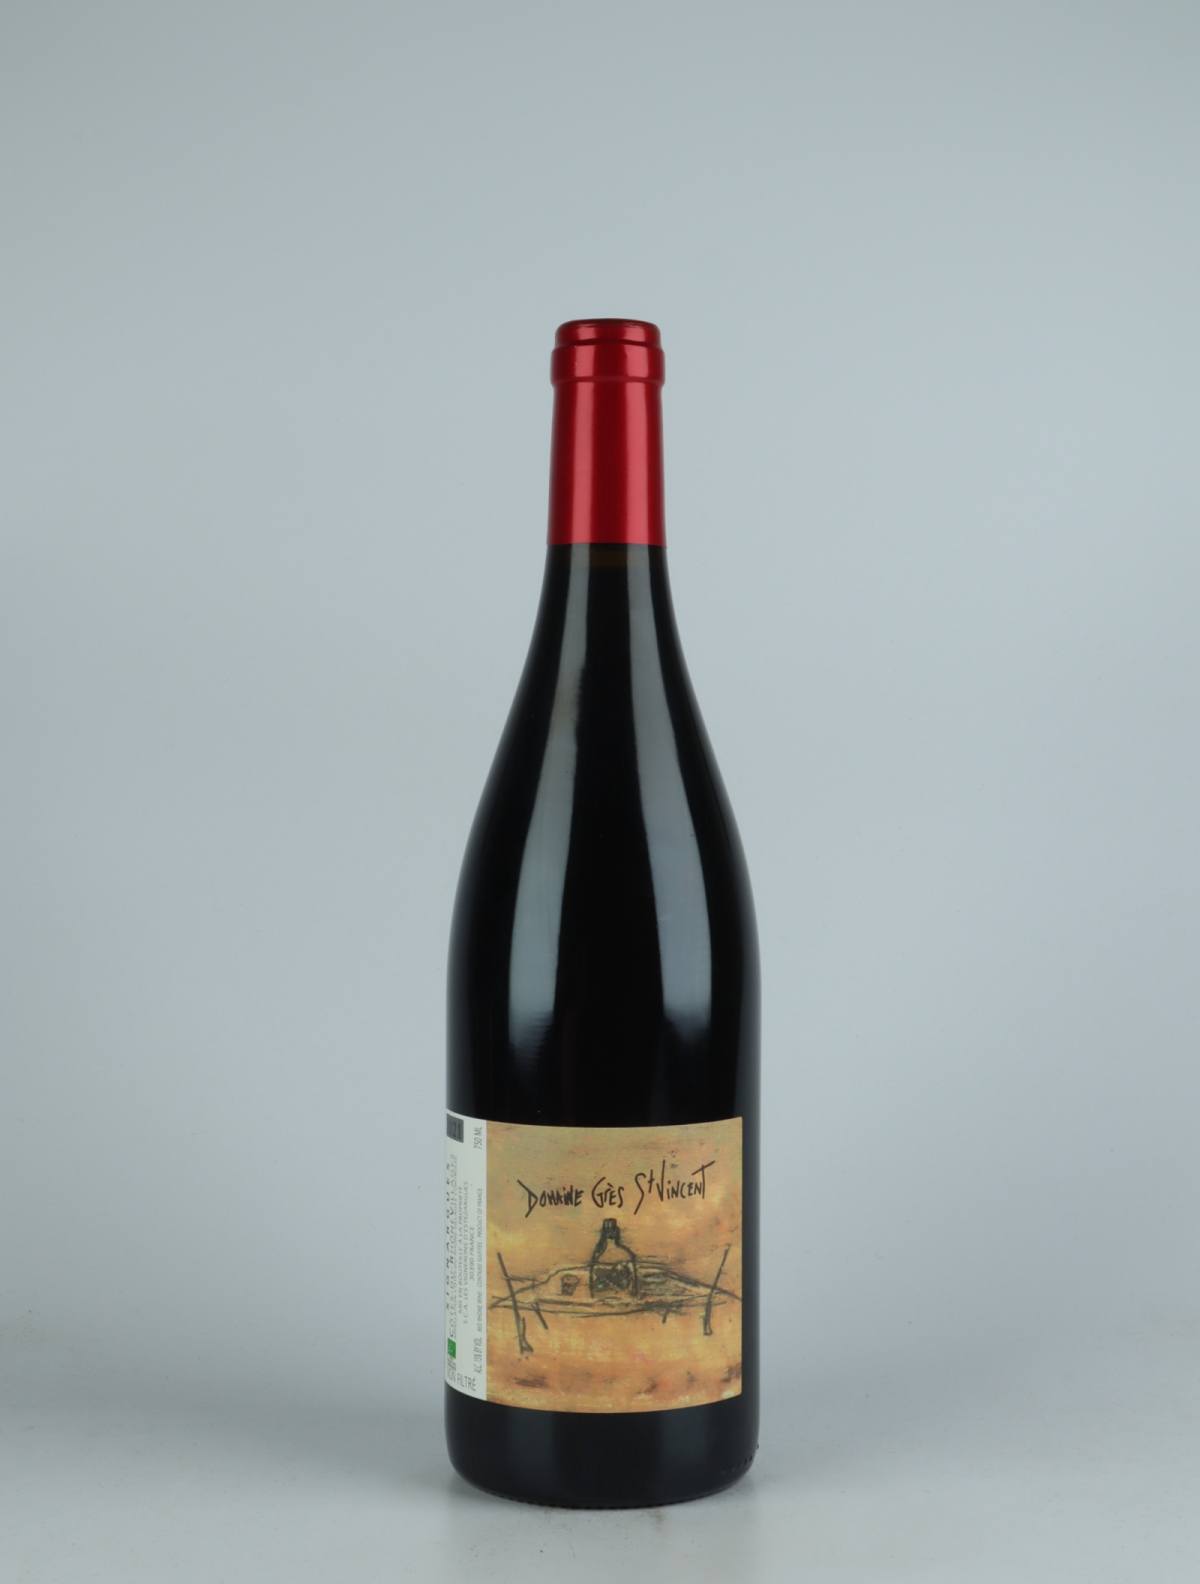 A bottle 2021 Côtes du Rhône - Grès St Vincent Red wine from Les Vignerons d’Estézargues, Rhône in France